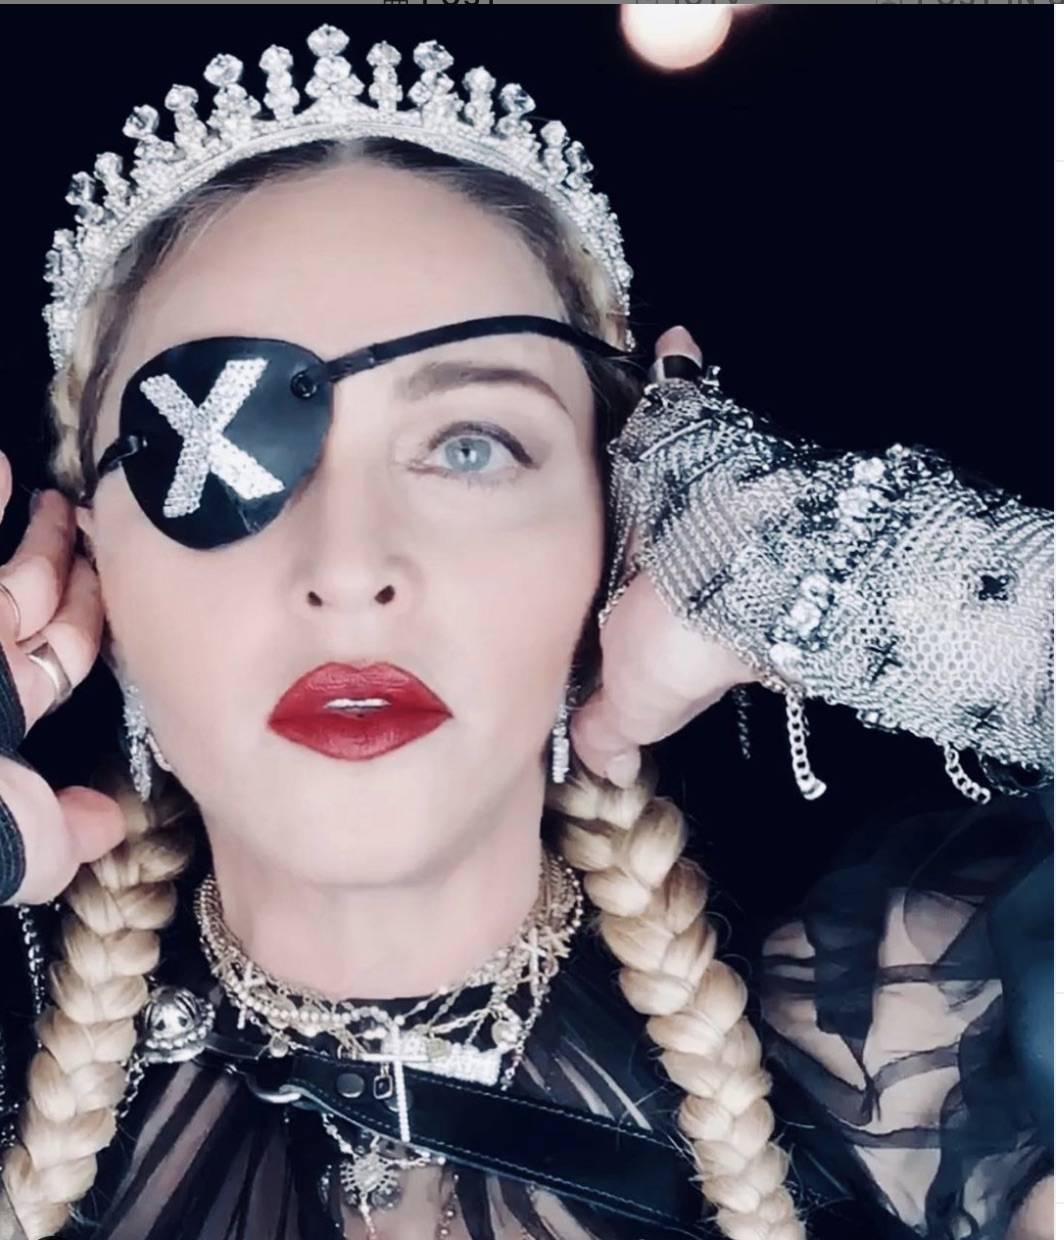  Madonna "stecca" all’Eurovision. E porta sul palco le bandiere di Israele e Palestina 